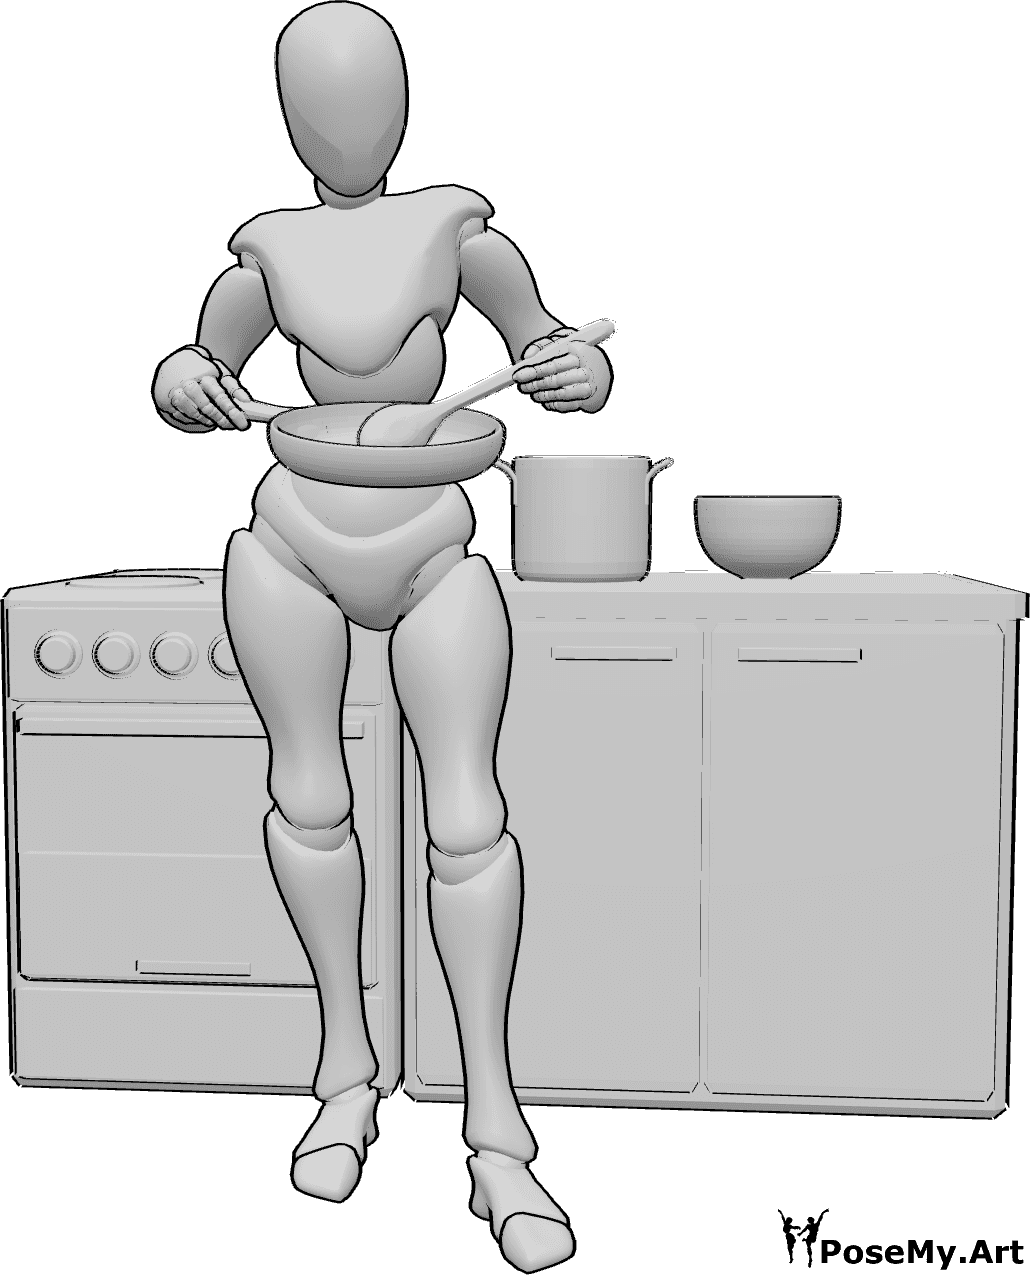 Référence des poses- Pose de cuisson debout en remuant - Femme debout, tenant une casserole dans sa main droite et remuant avec une cuillère en bois dans sa main gauche.